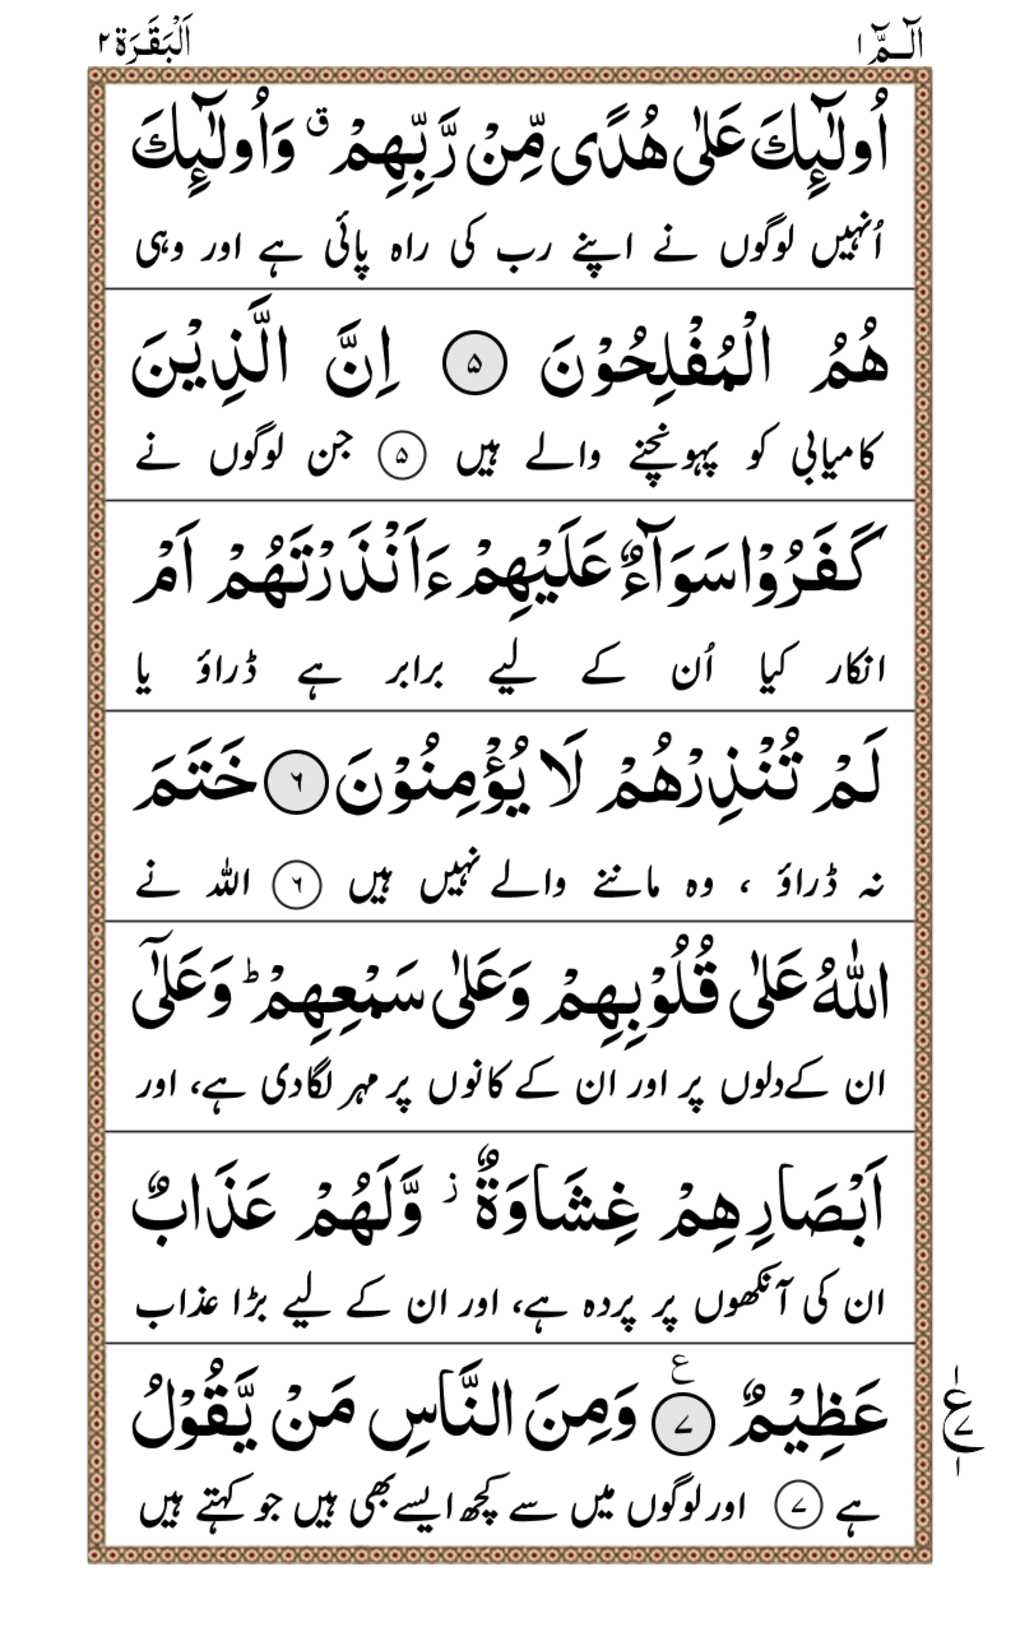 Surah Al Kahf Urdu Na Android Download